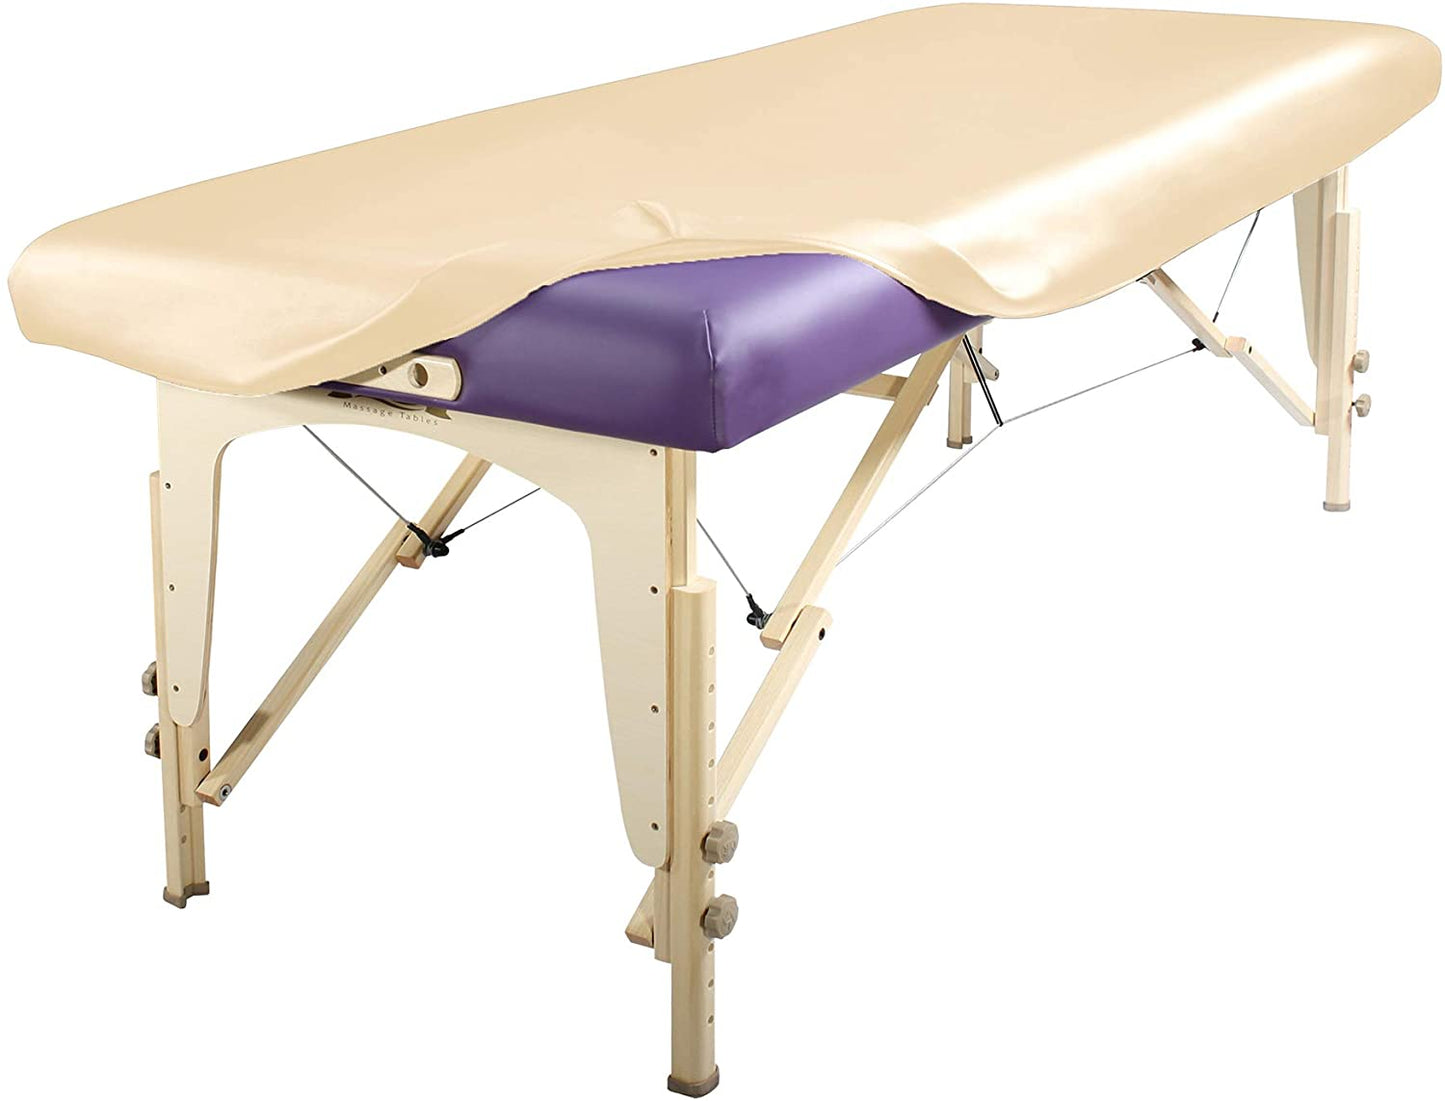 Housse de rembourrage pour table de massage - Housse en PU - Une par commande - Table non incluse